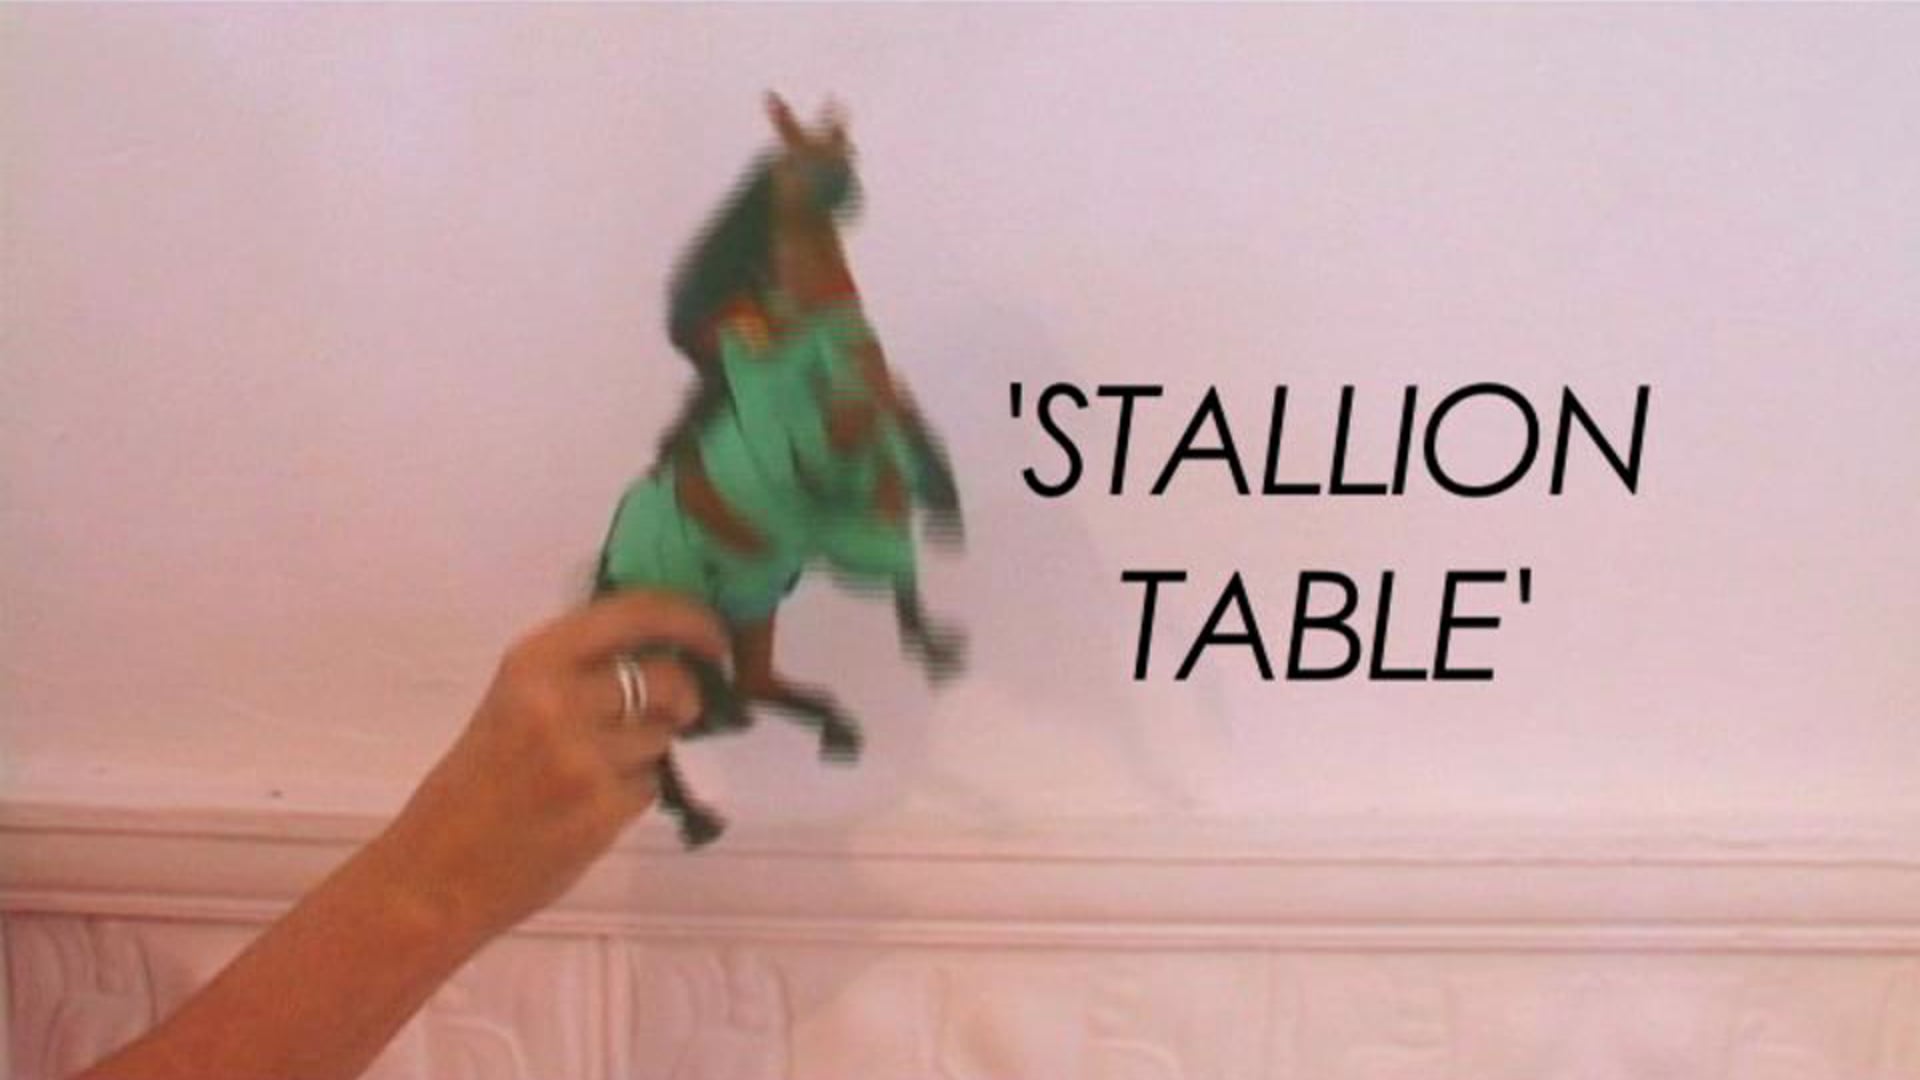 Stallion Table